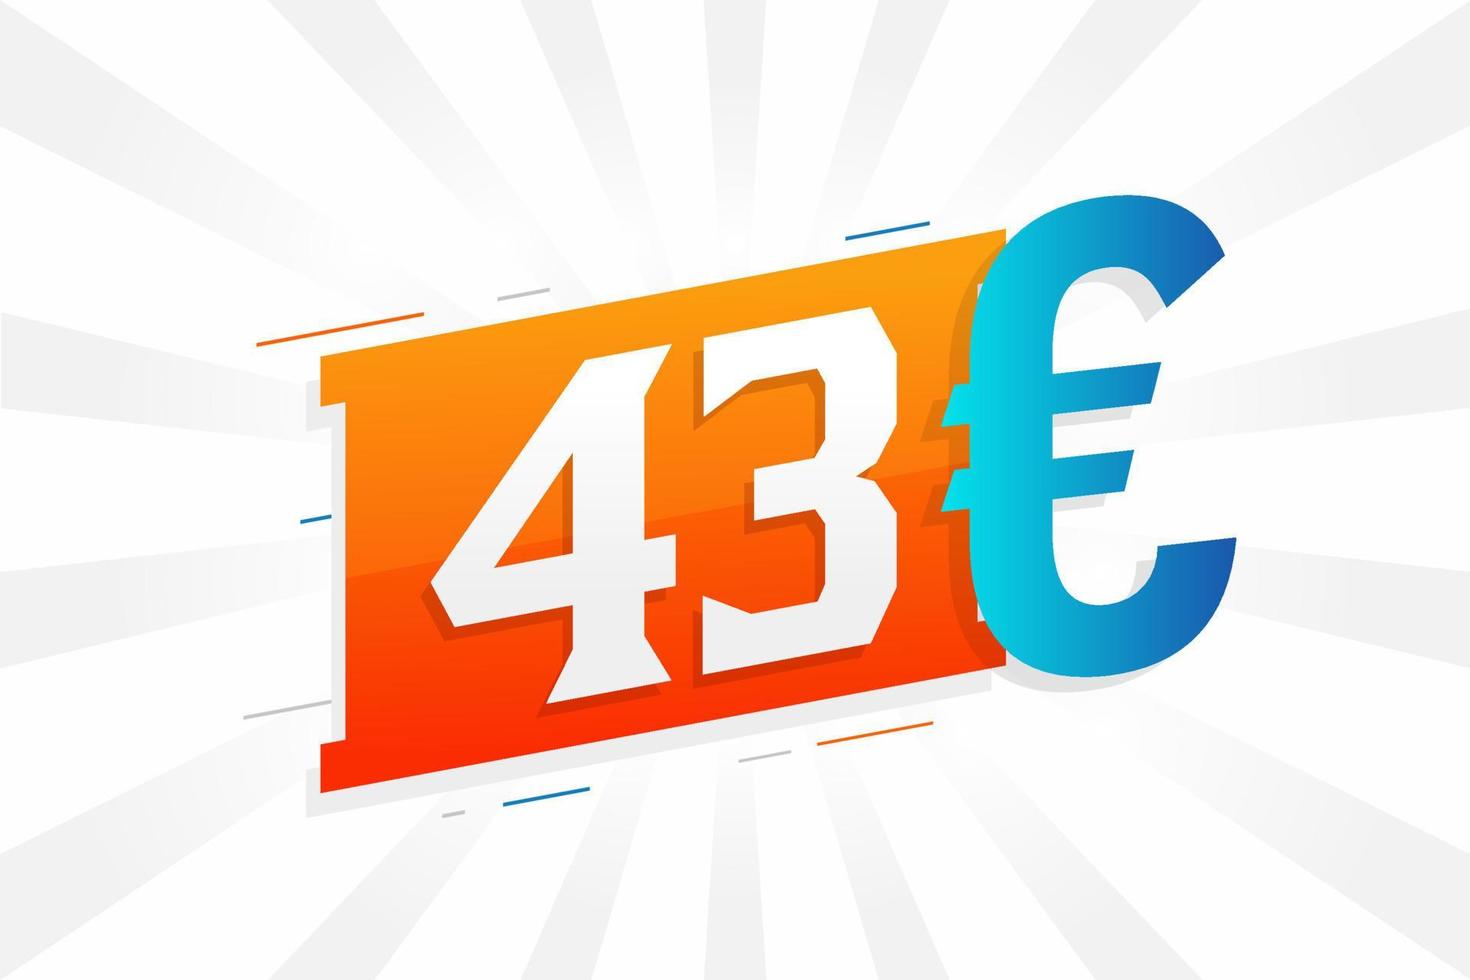 43-Euro-Währungsvektor-Textsymbol. 43 euro währungsaktienvektor der europäischen union vektor